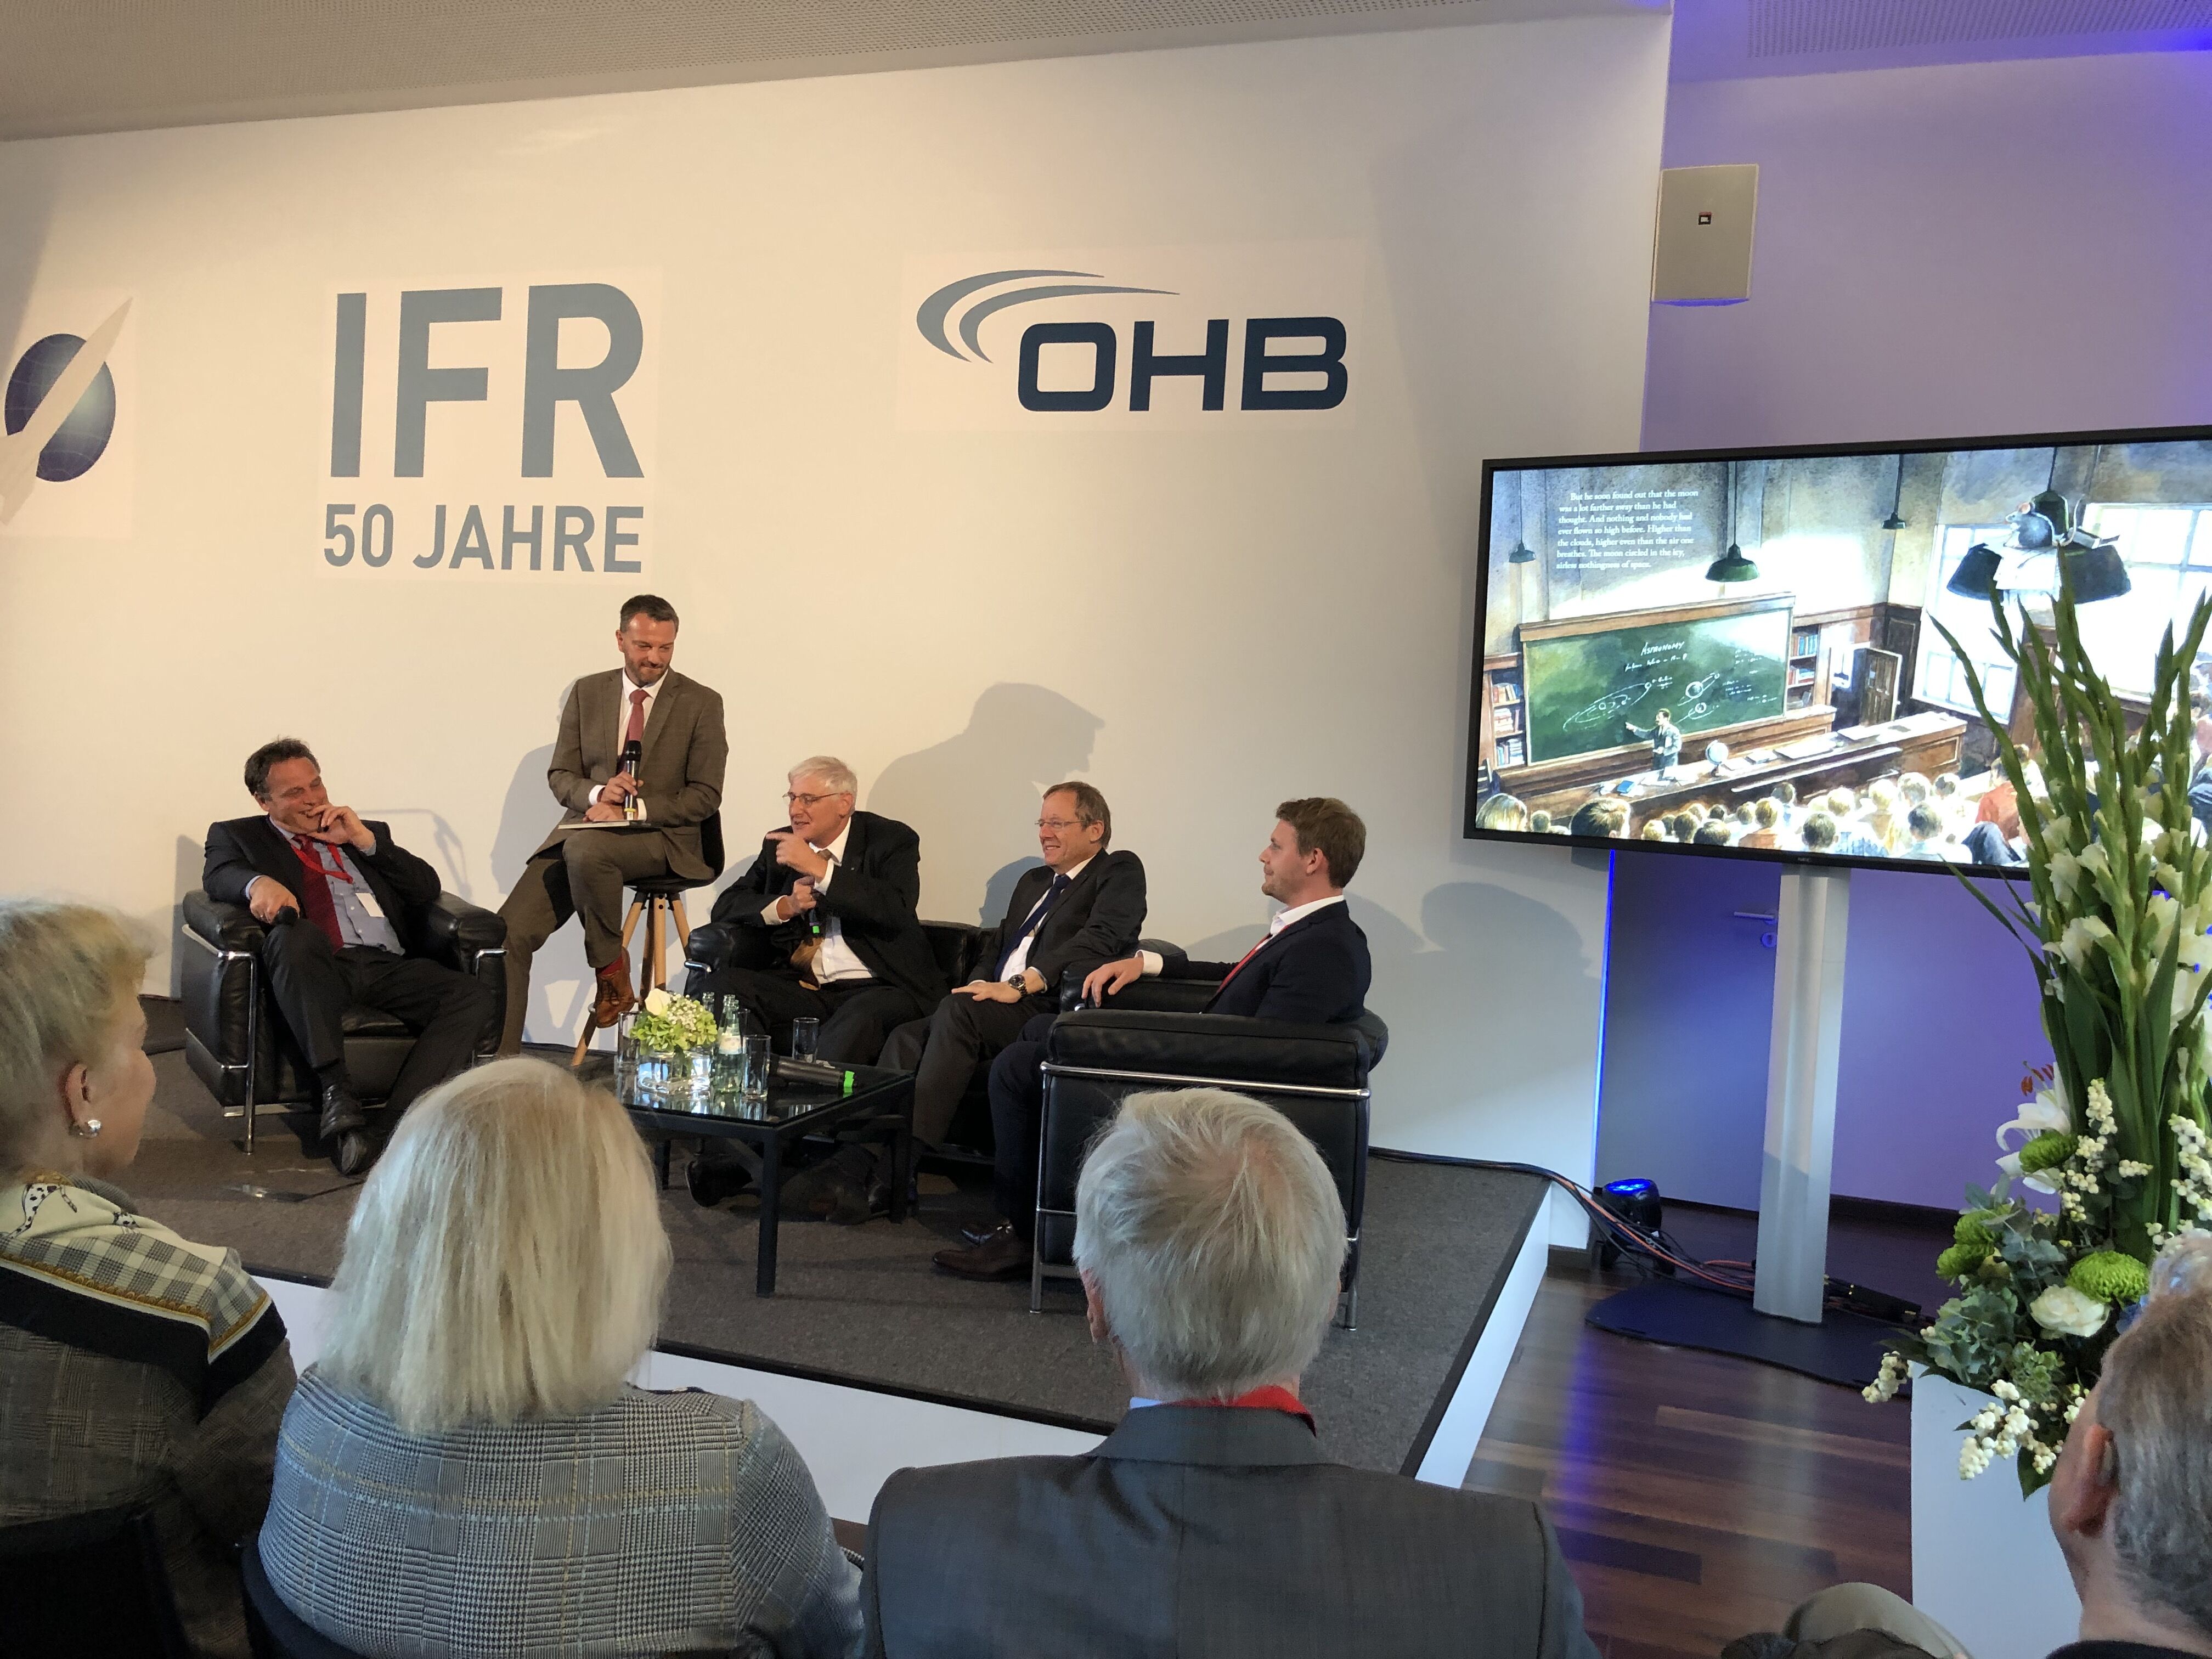 Podiumsdiskussion mit Prof. Kirchner, C. Borowy, Prof. Dittus, Prof. Wörner und D. Metzler (v.l.n.r.) bei der 50. Jahrestagung des IFR